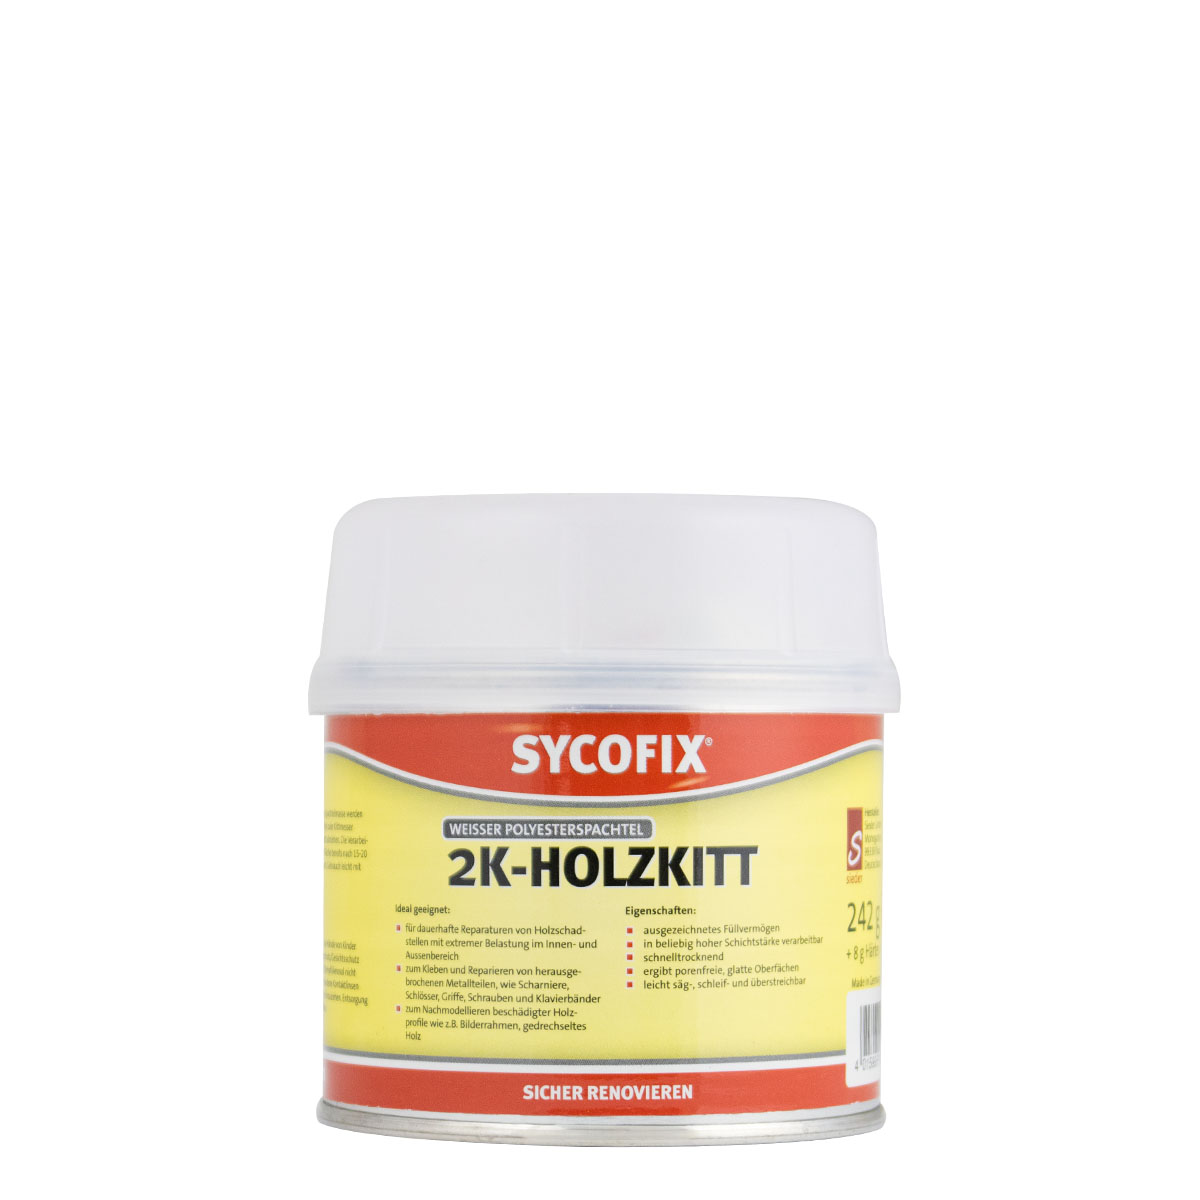 sycofix_2k-holzkit_250g_gross